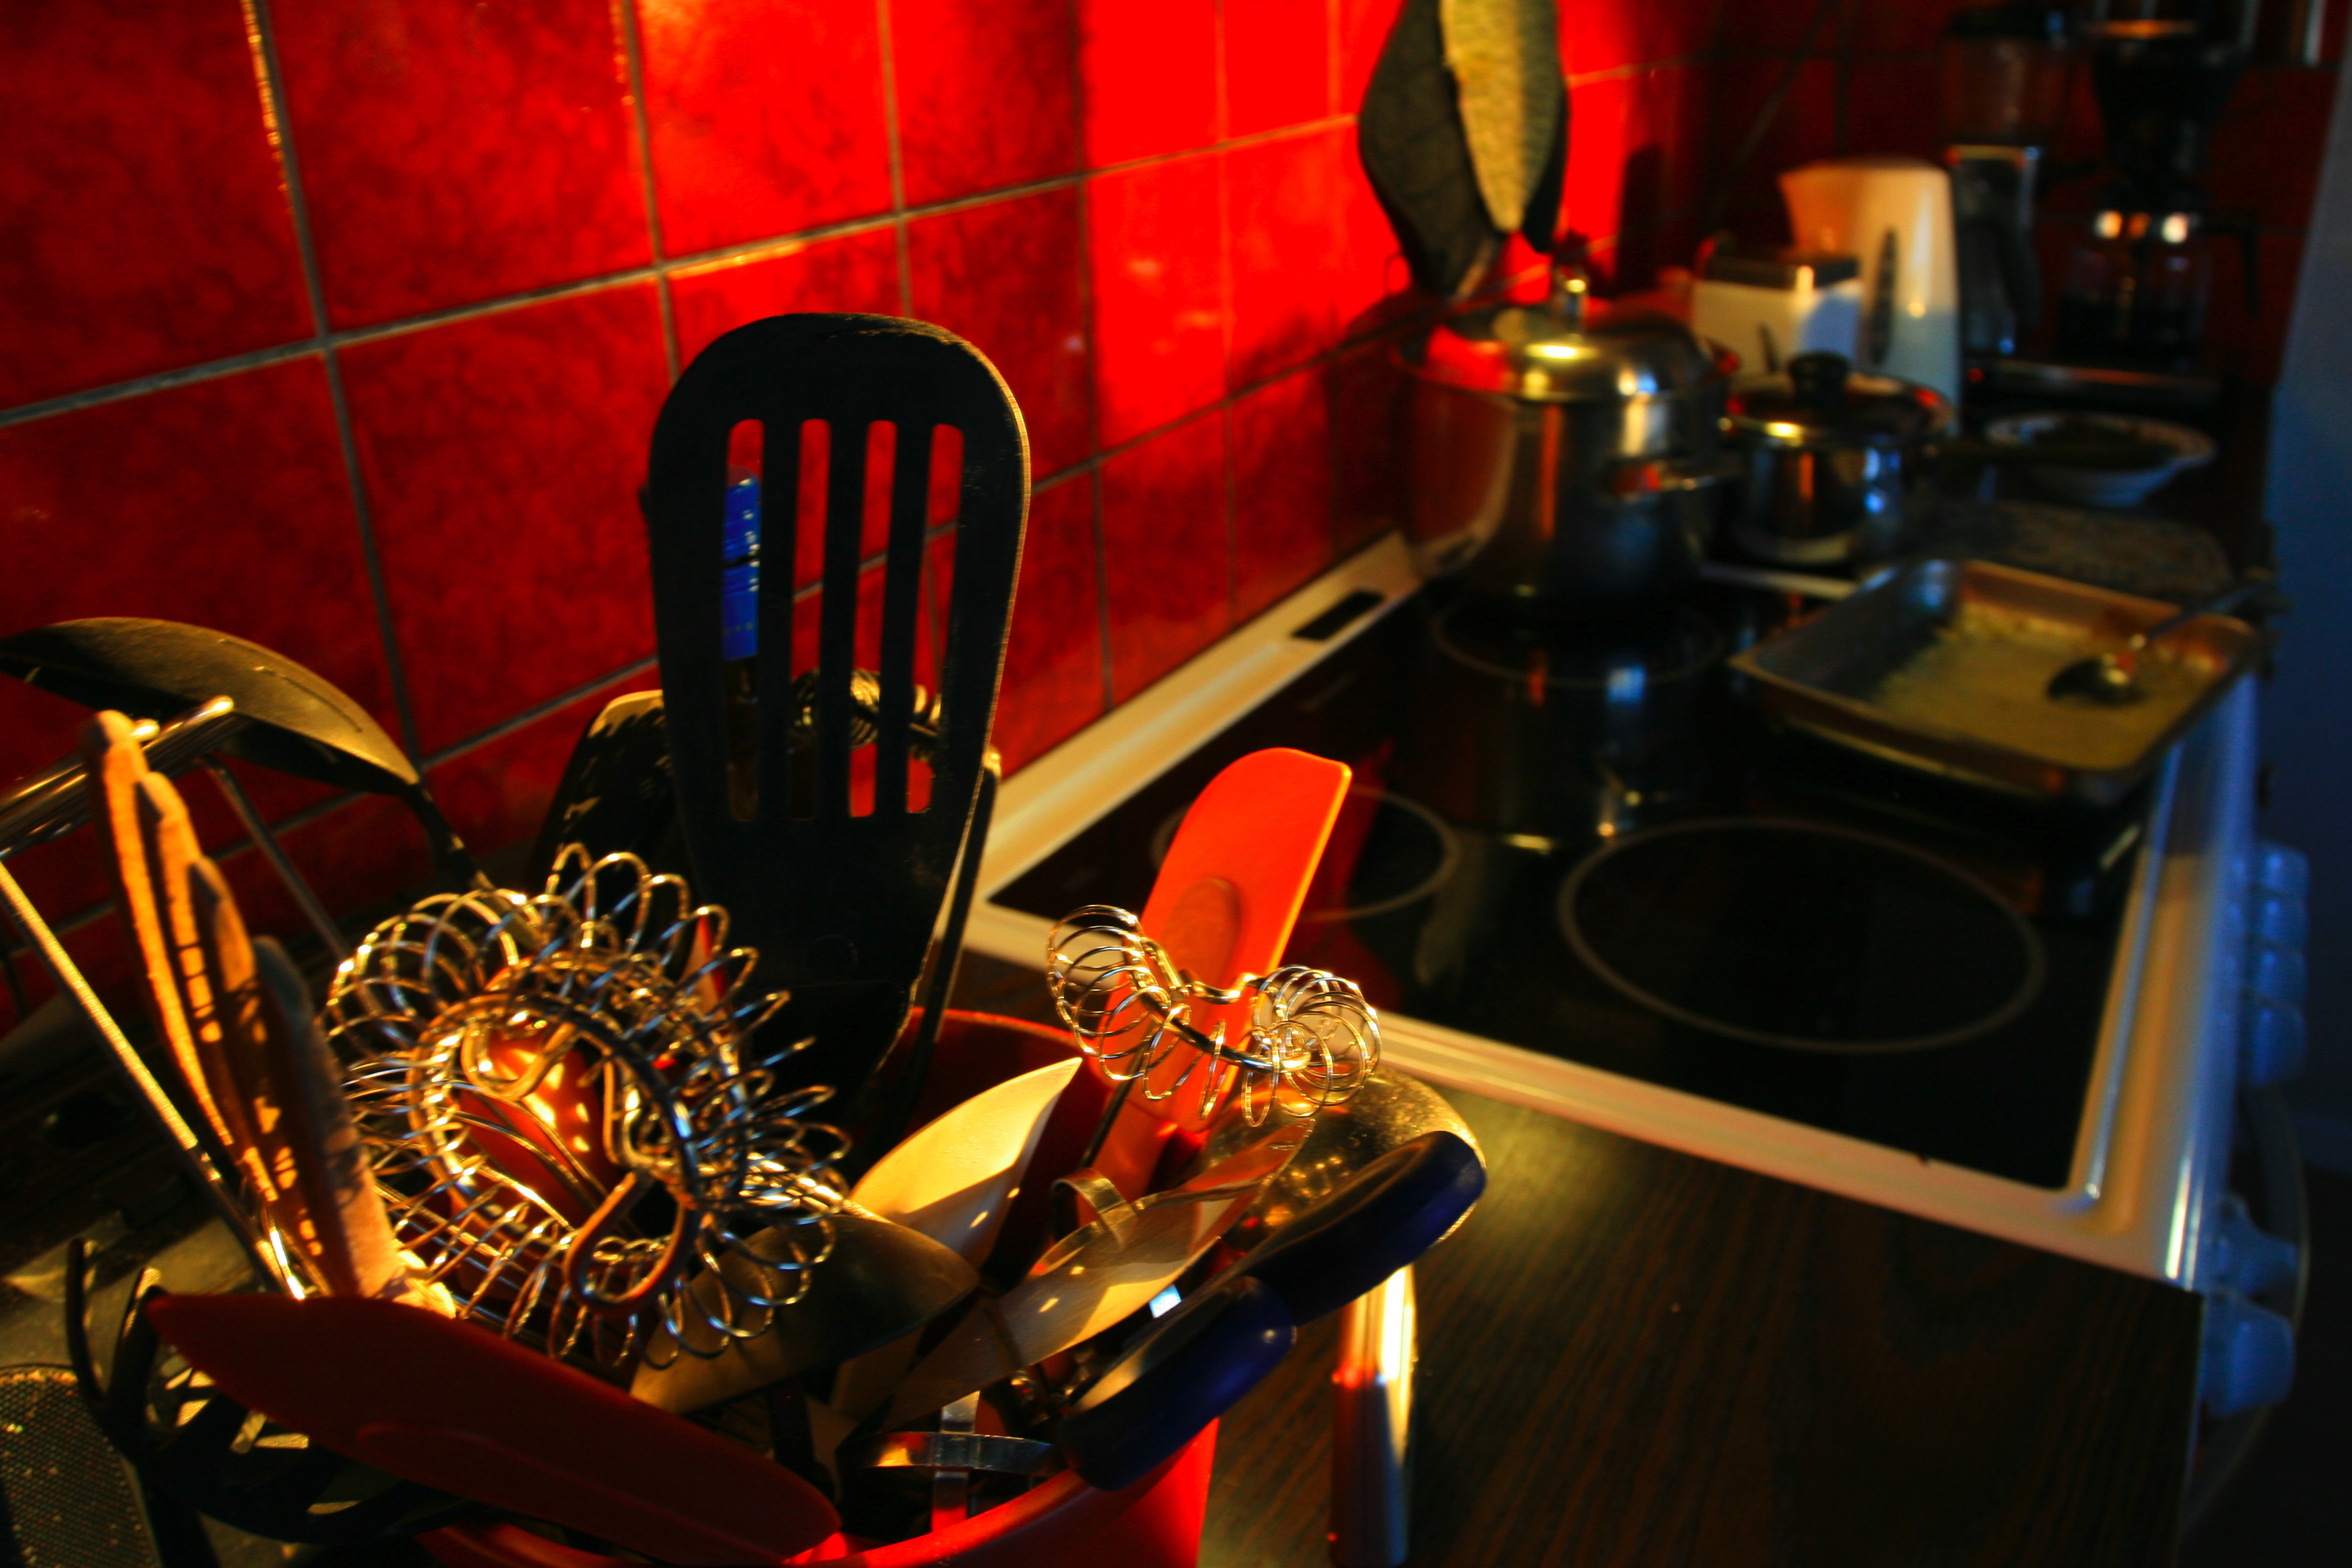 Kitchen, Accessories, Black, Bspo06, Red, HQ Photo